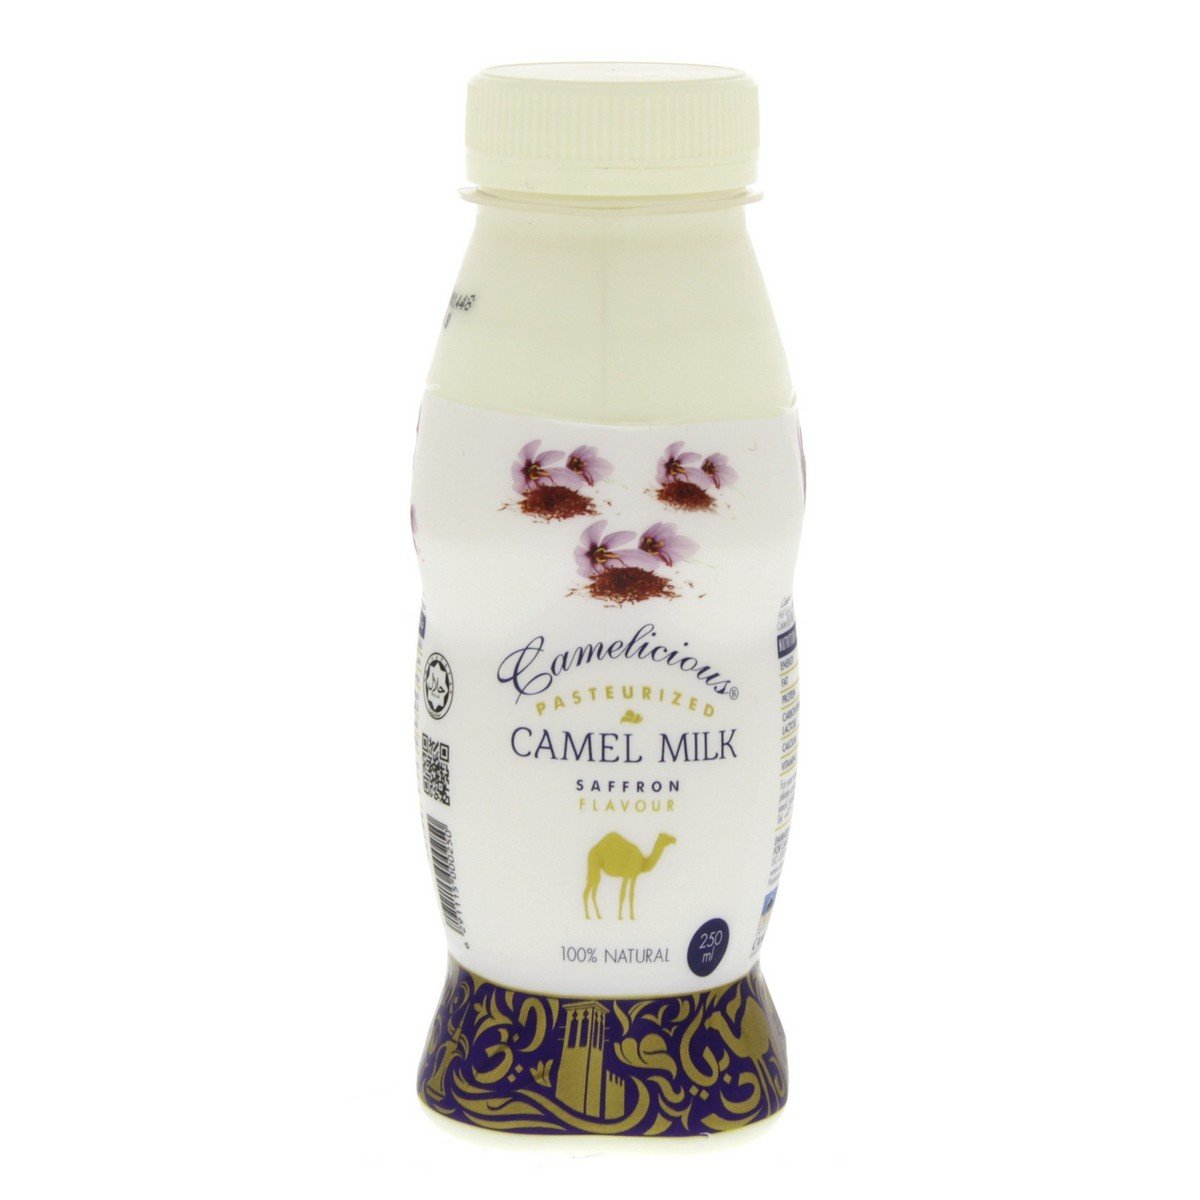 Camelicious Saffron Flavour Camel Milk 250 ml